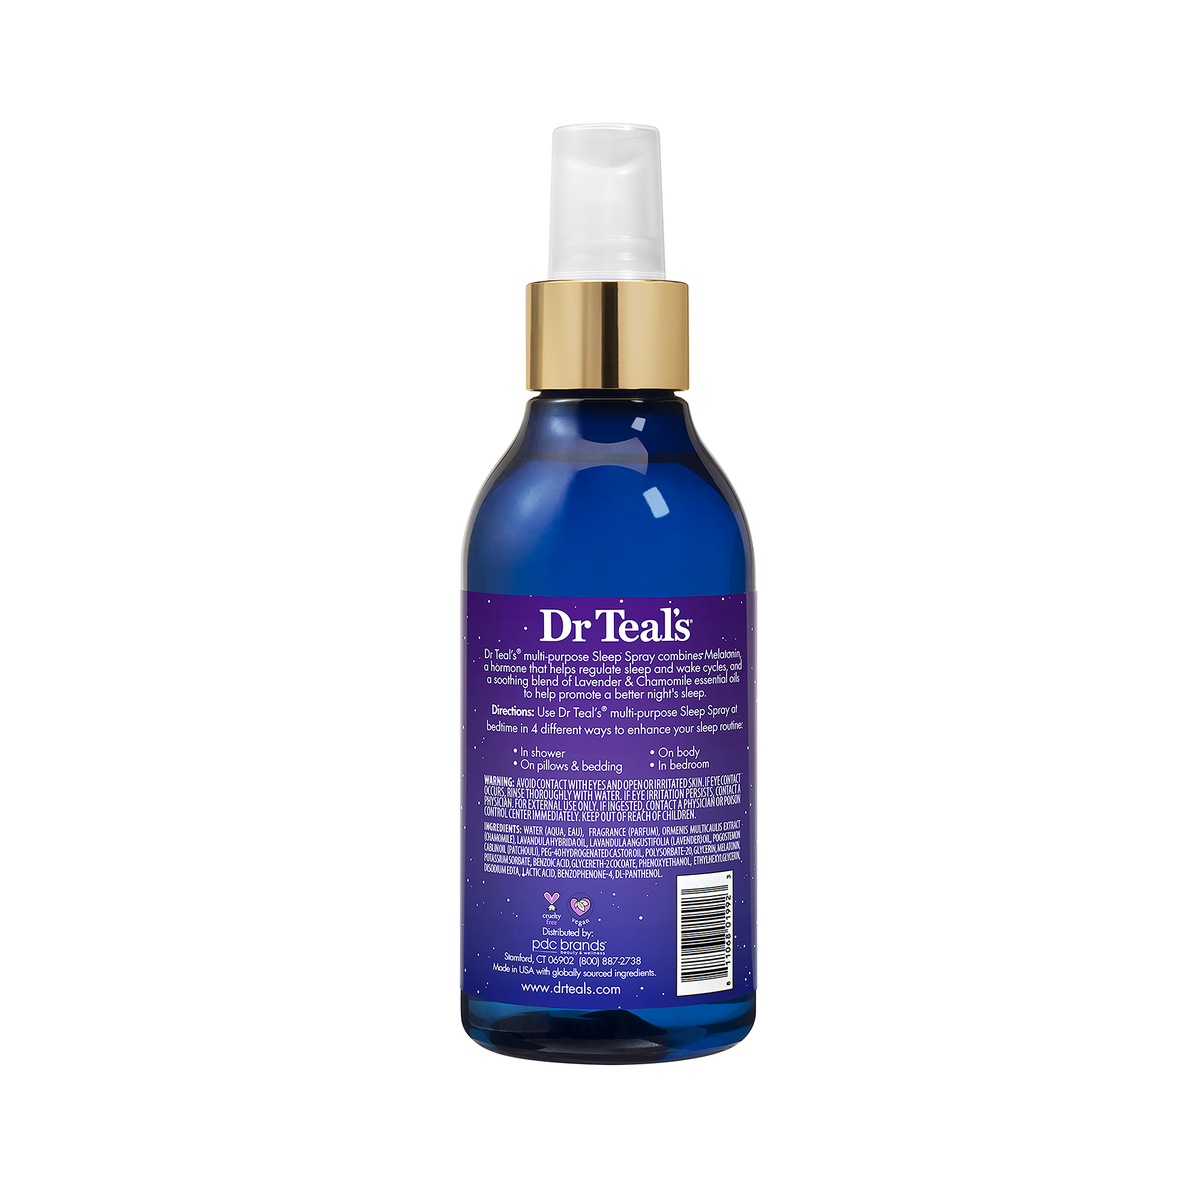 Dr Teal's Sleep Spray With Melatonin & Essential Oils 177 ml